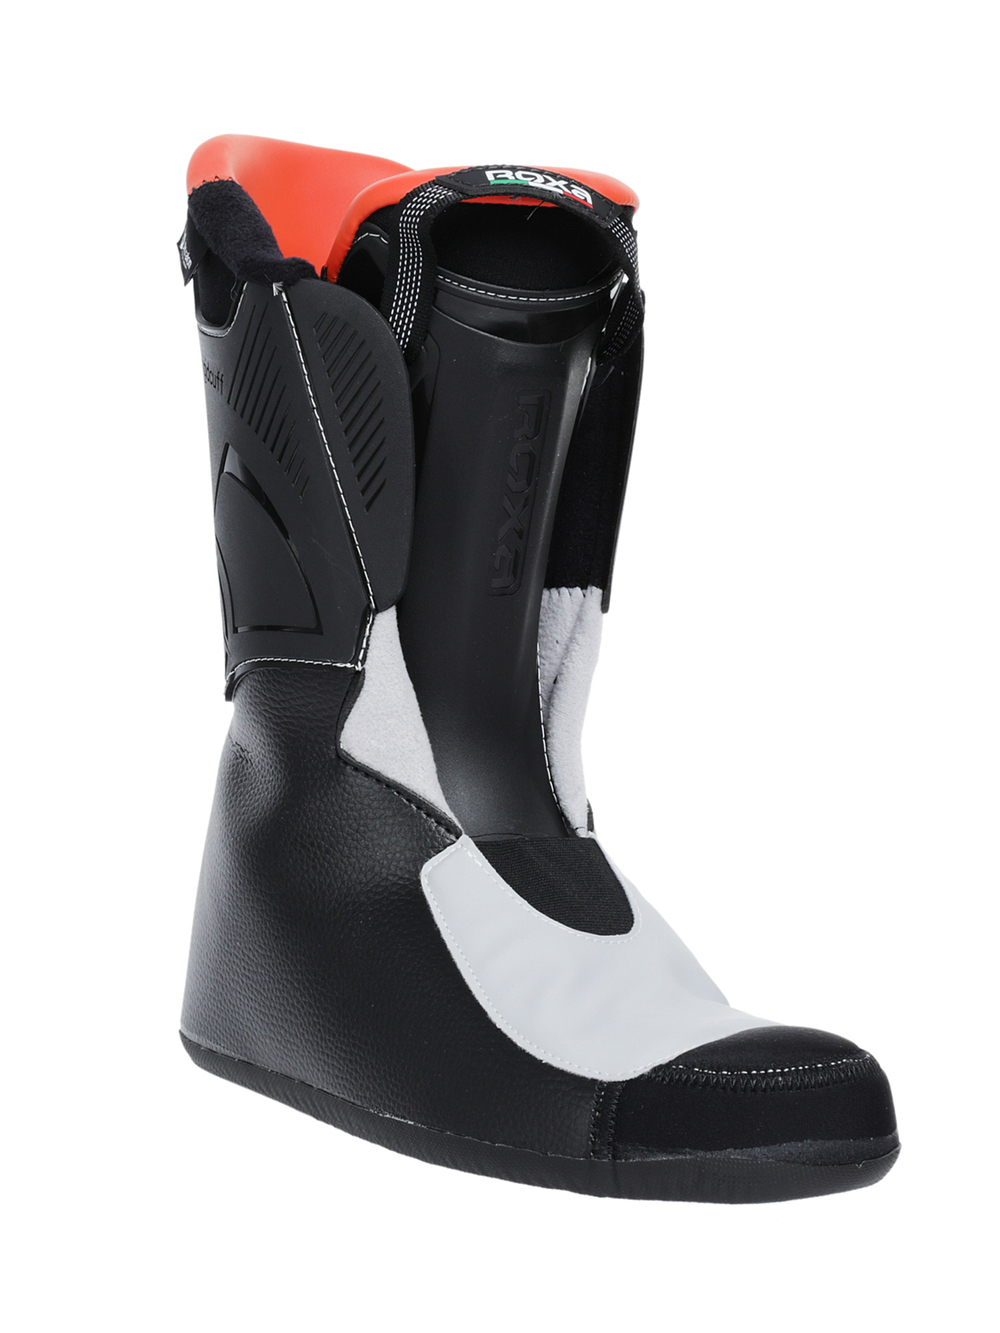 Горнолыжные ботинки ROXA Rfit Hike 90 Gw Black/Orange (см:28,5)